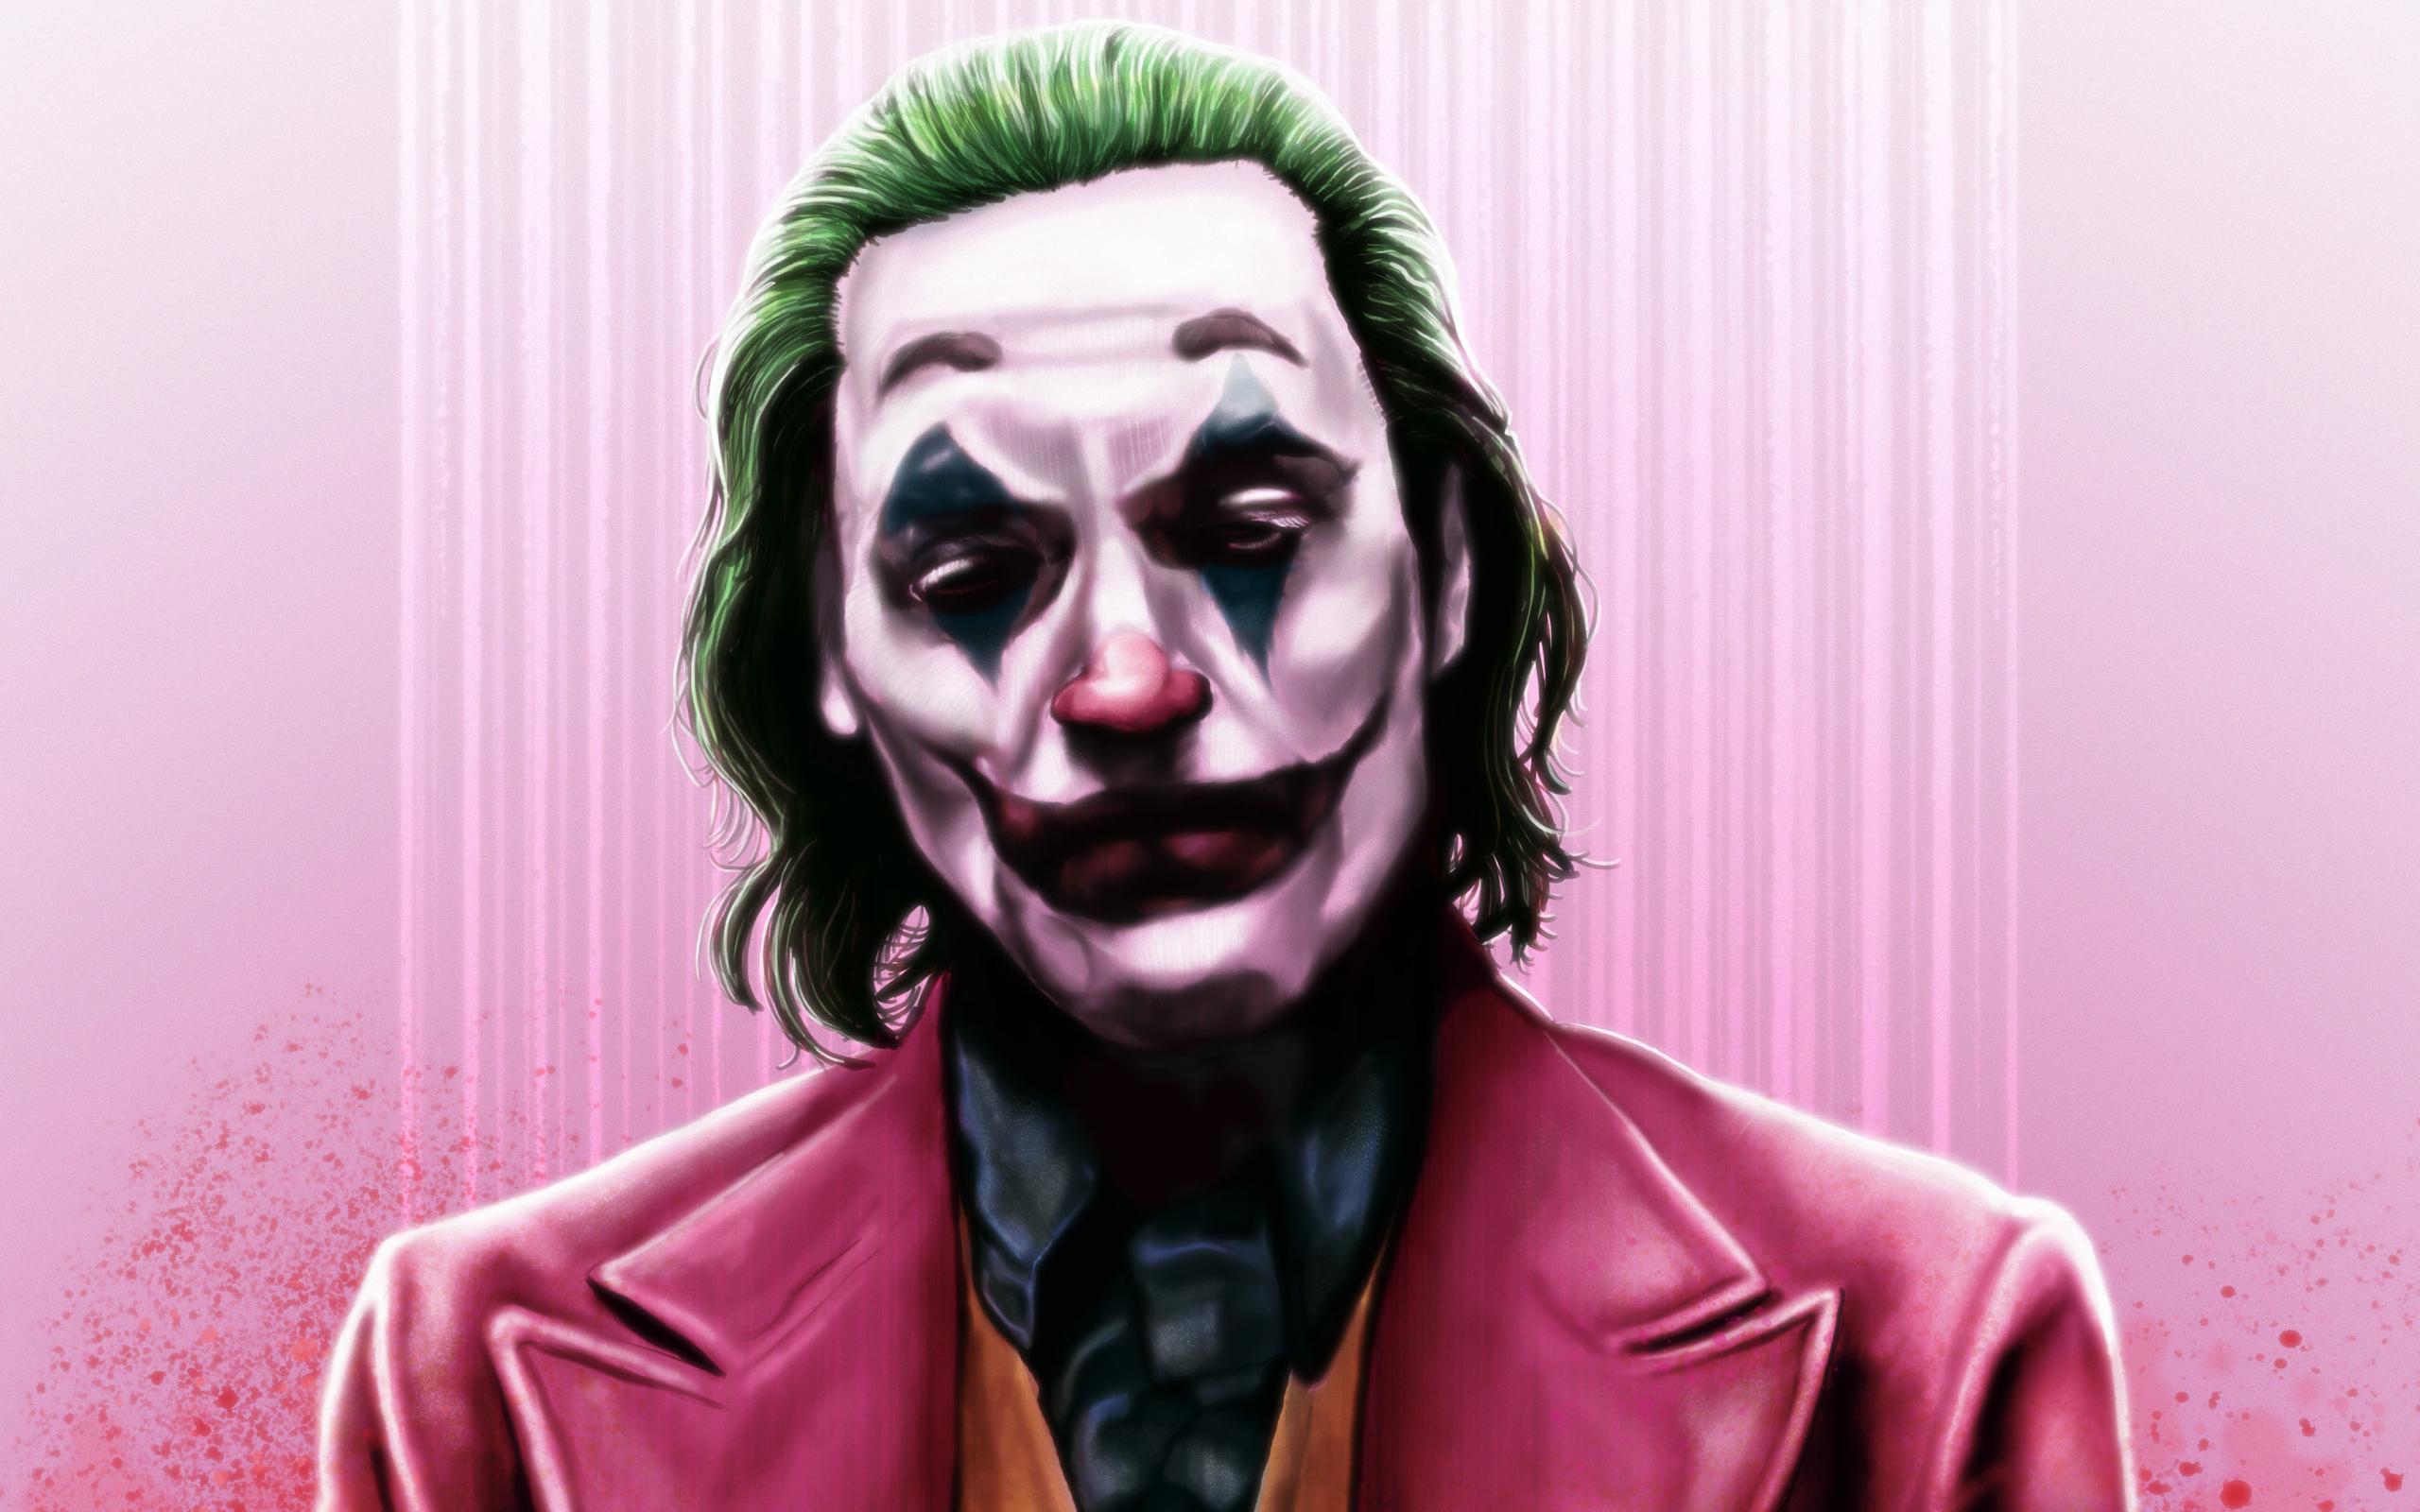 Wallpaper of DC Comics, Joker, Joaquin Phoenix background